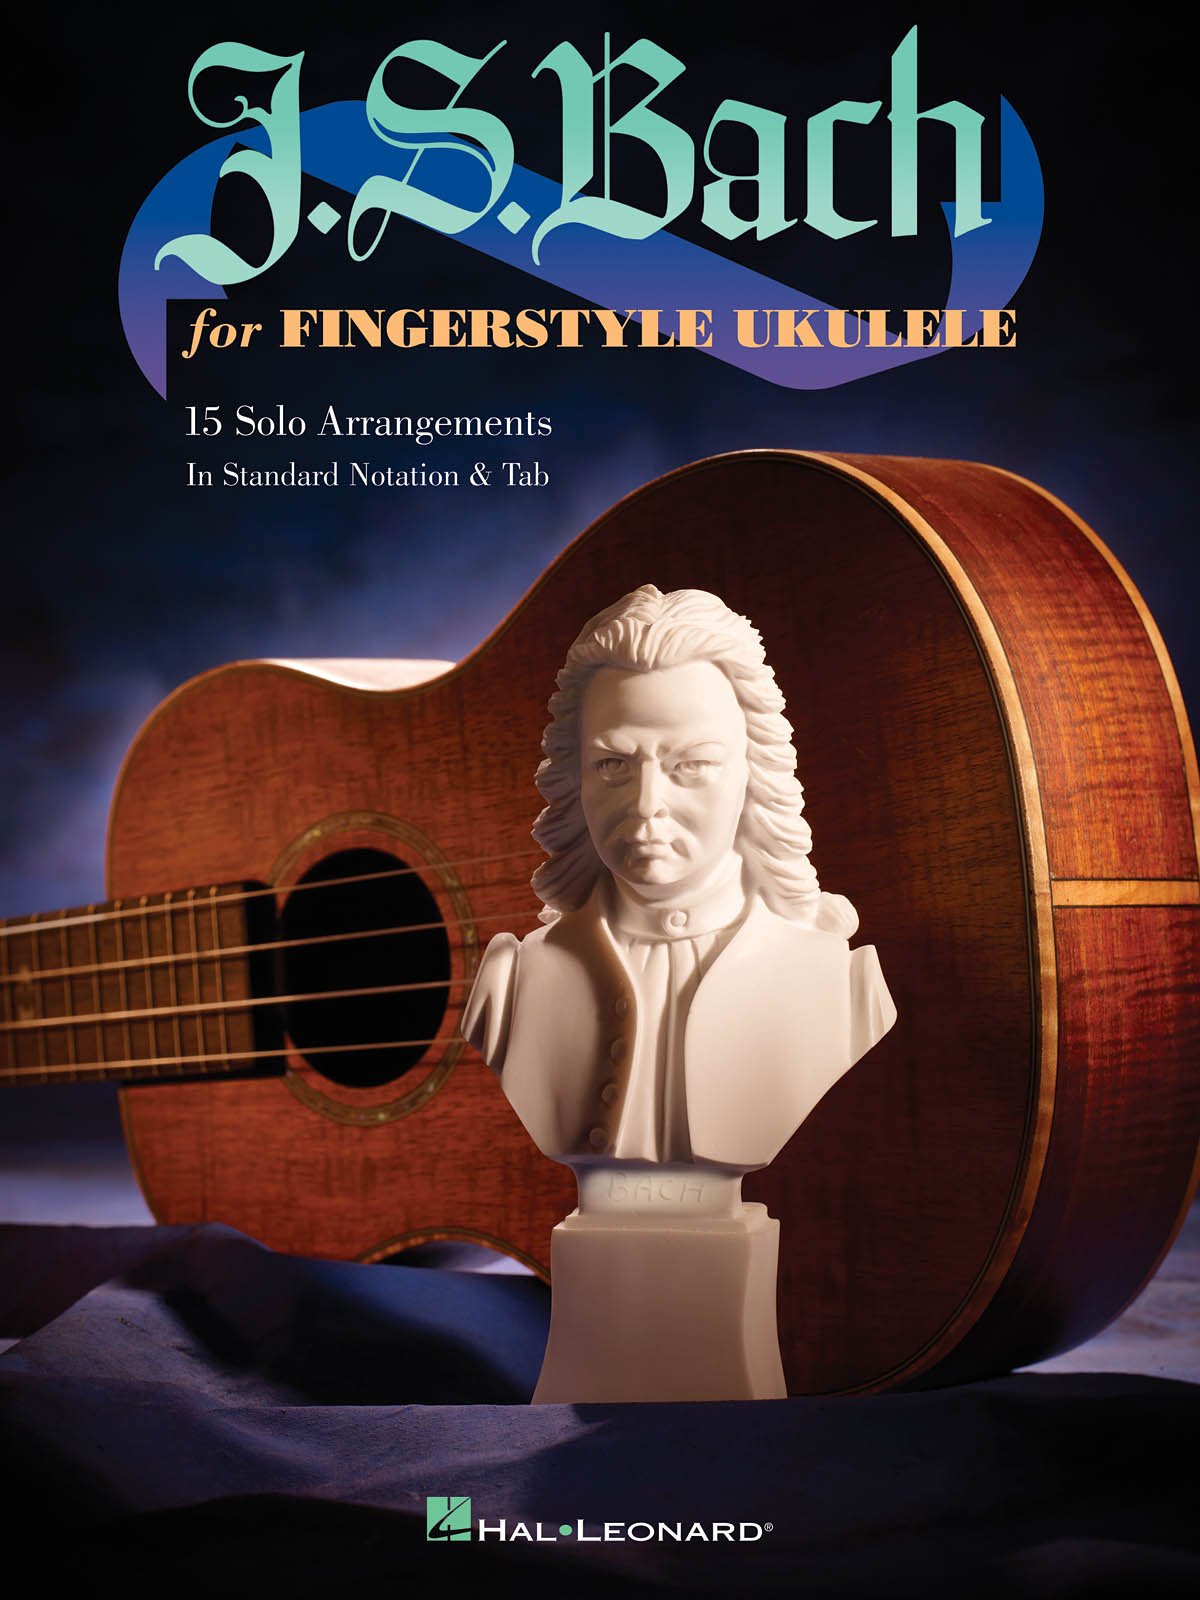 J.S. Bach for Fingerstyle Ukulele noty pro ukulele